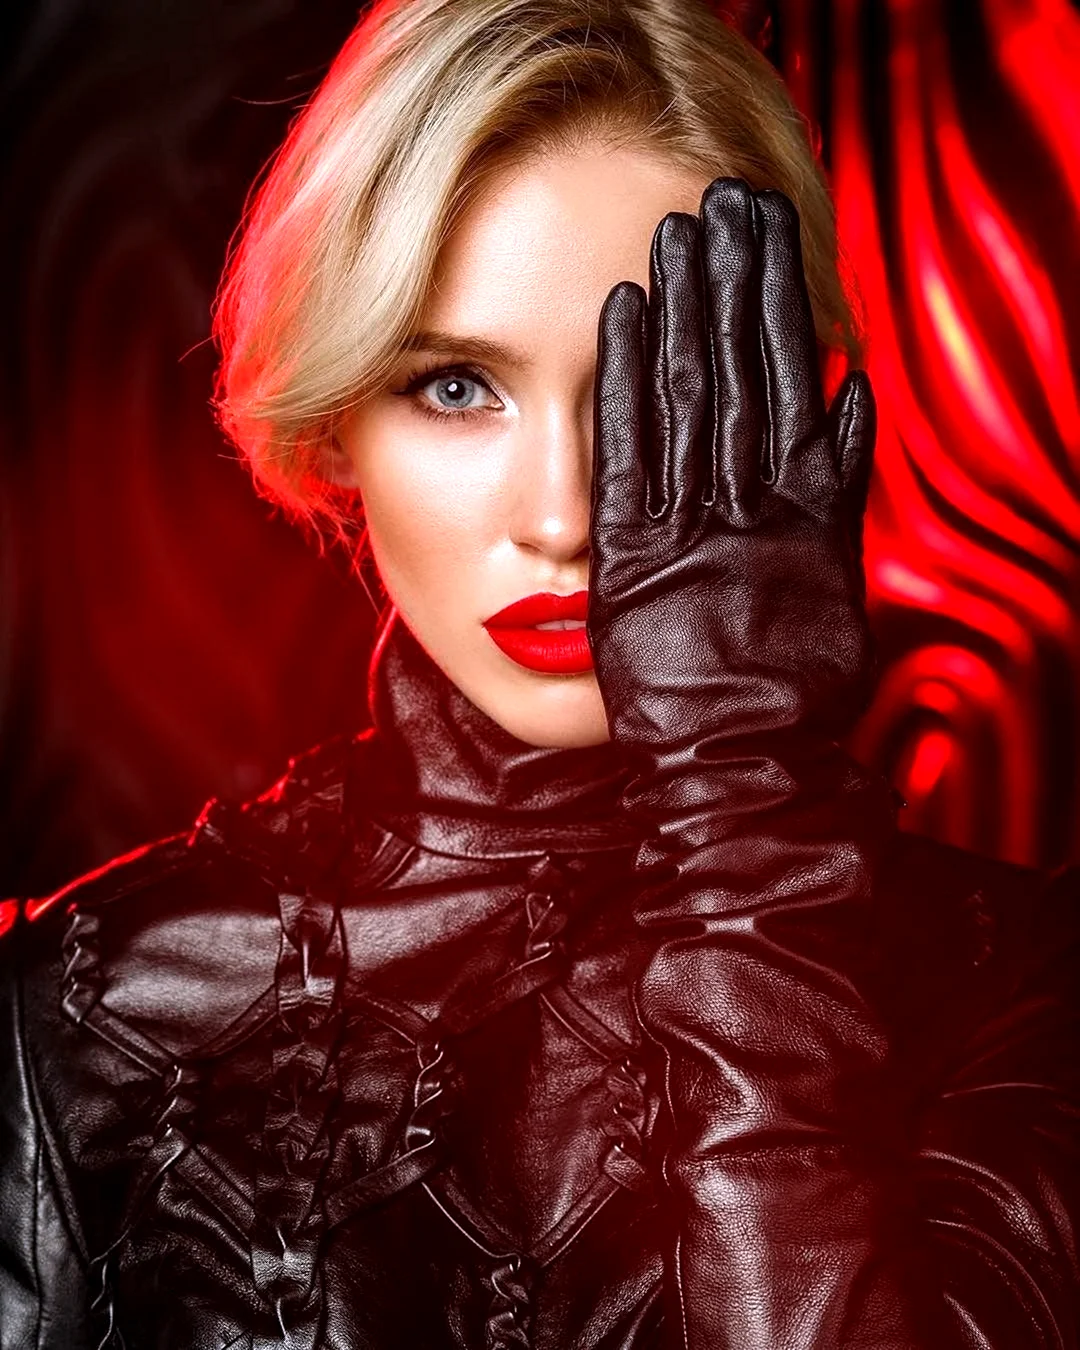 Екатерина Бредова Leather Gloves